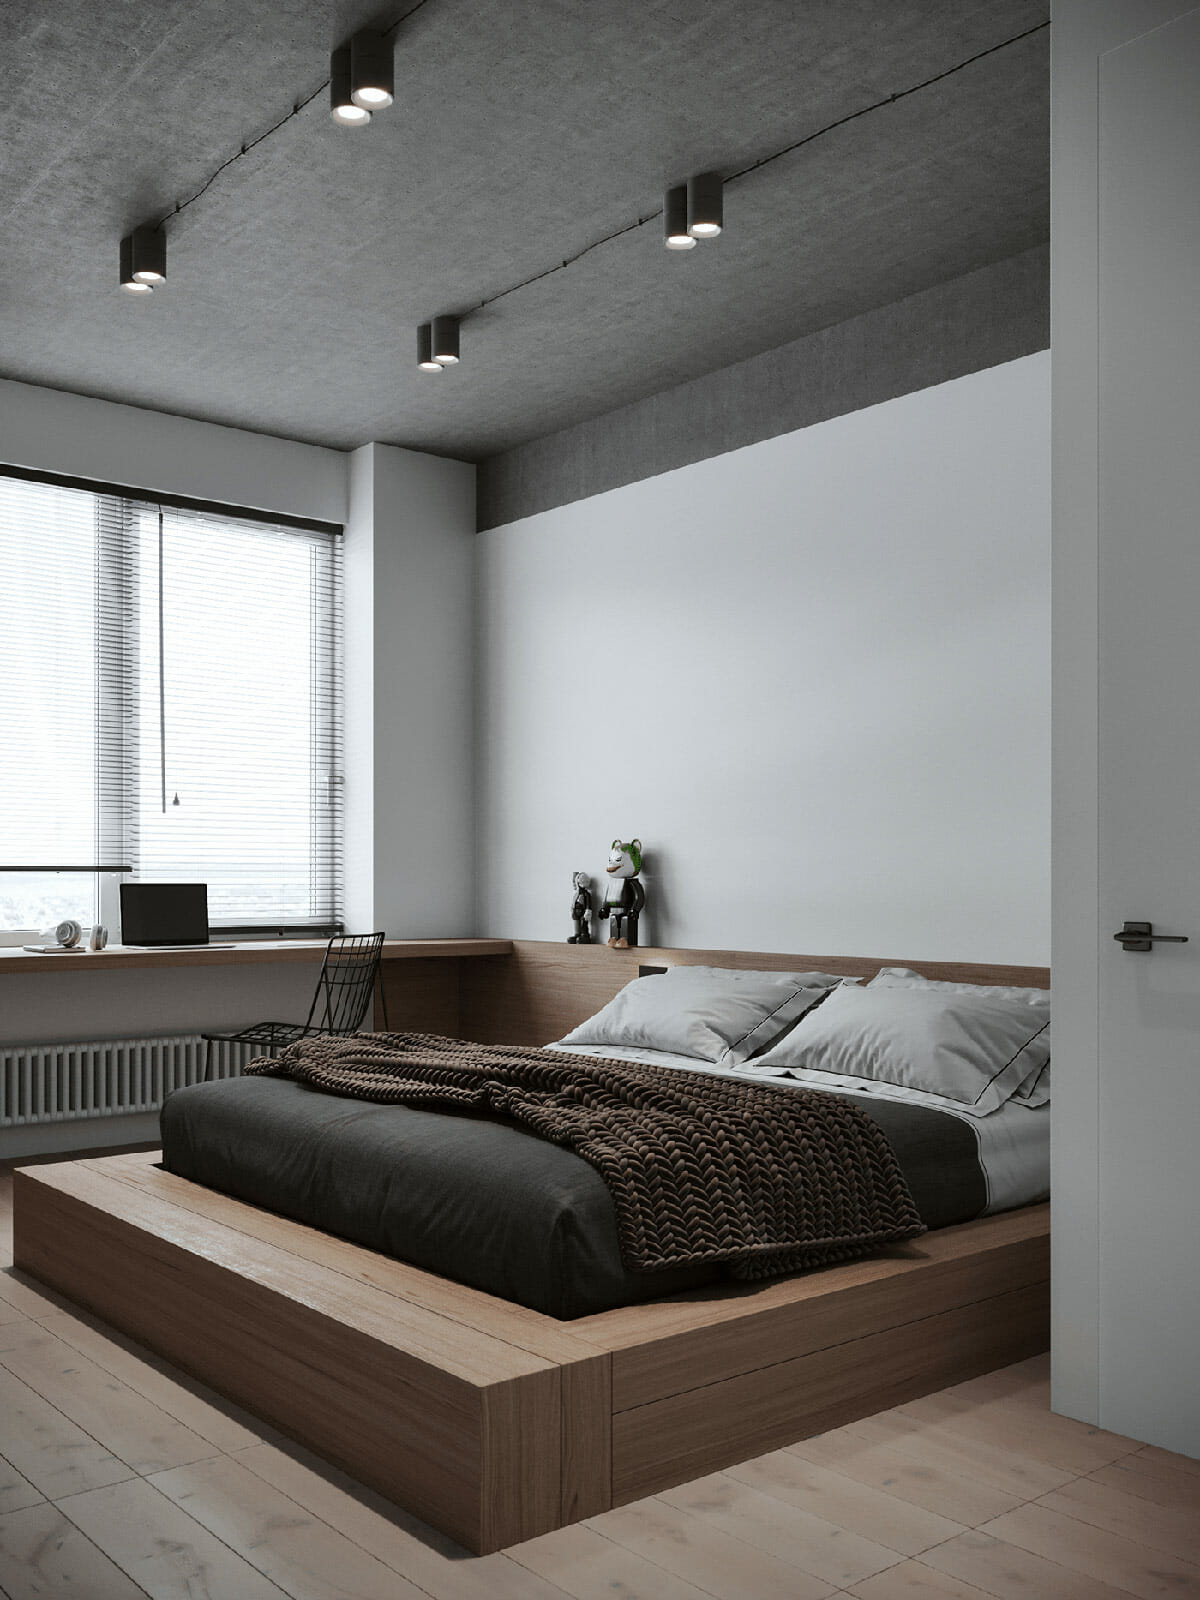 インダストリアルスタイルのベッドルームデザイン